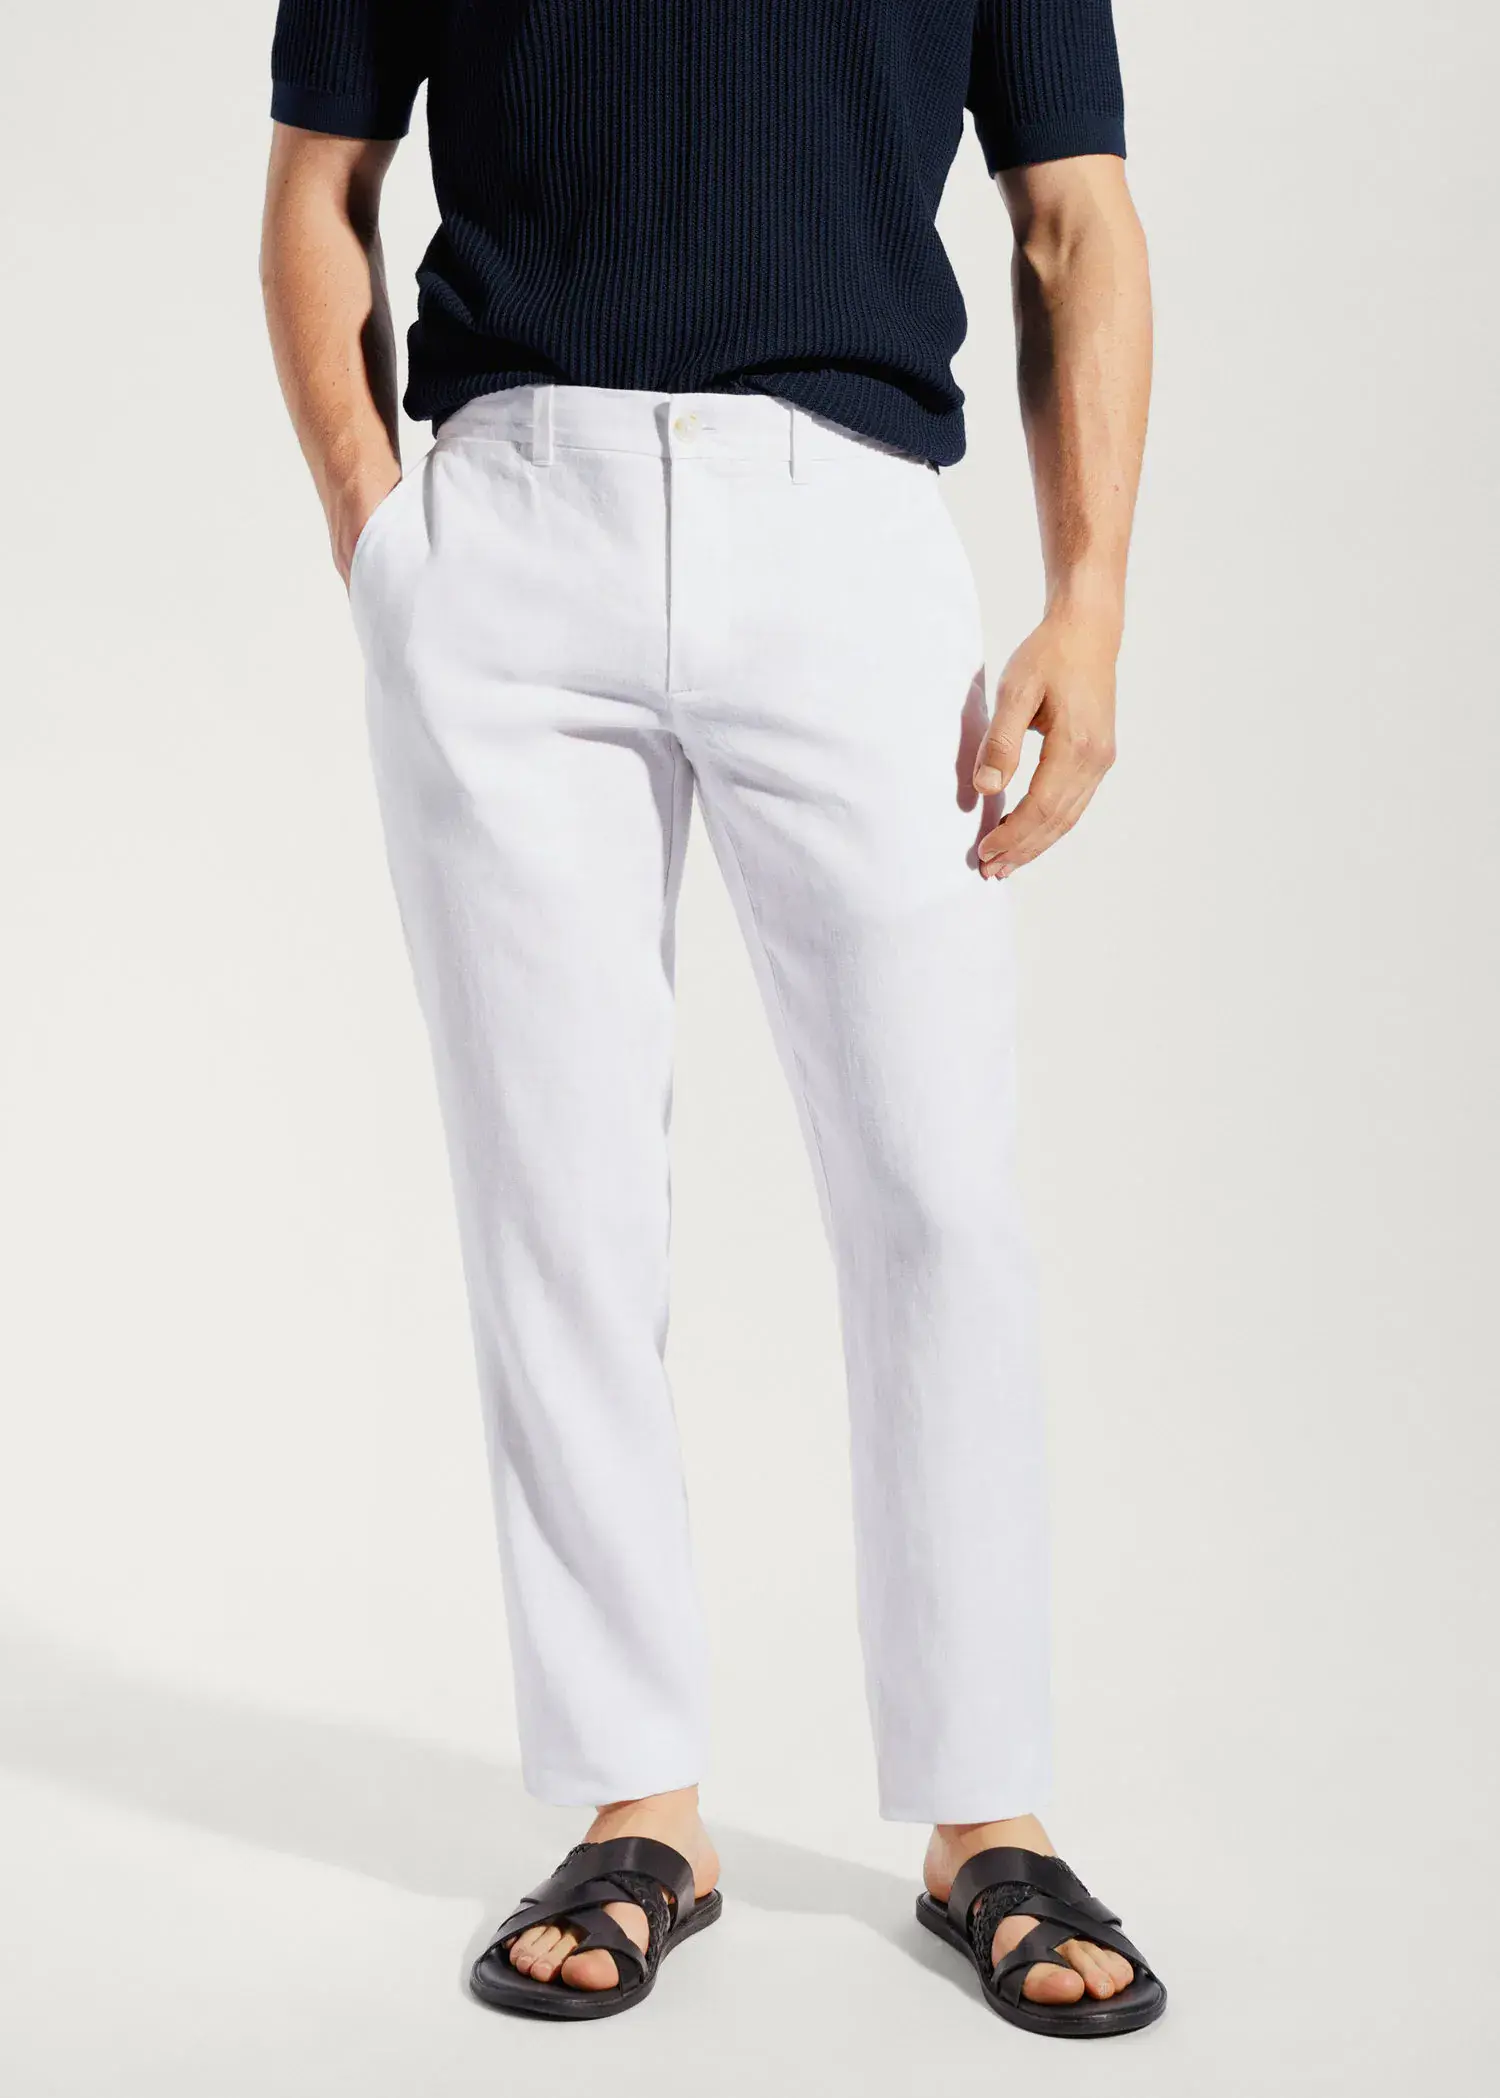 Buy Men's Linen Plus Size Trousers Online | Next UK